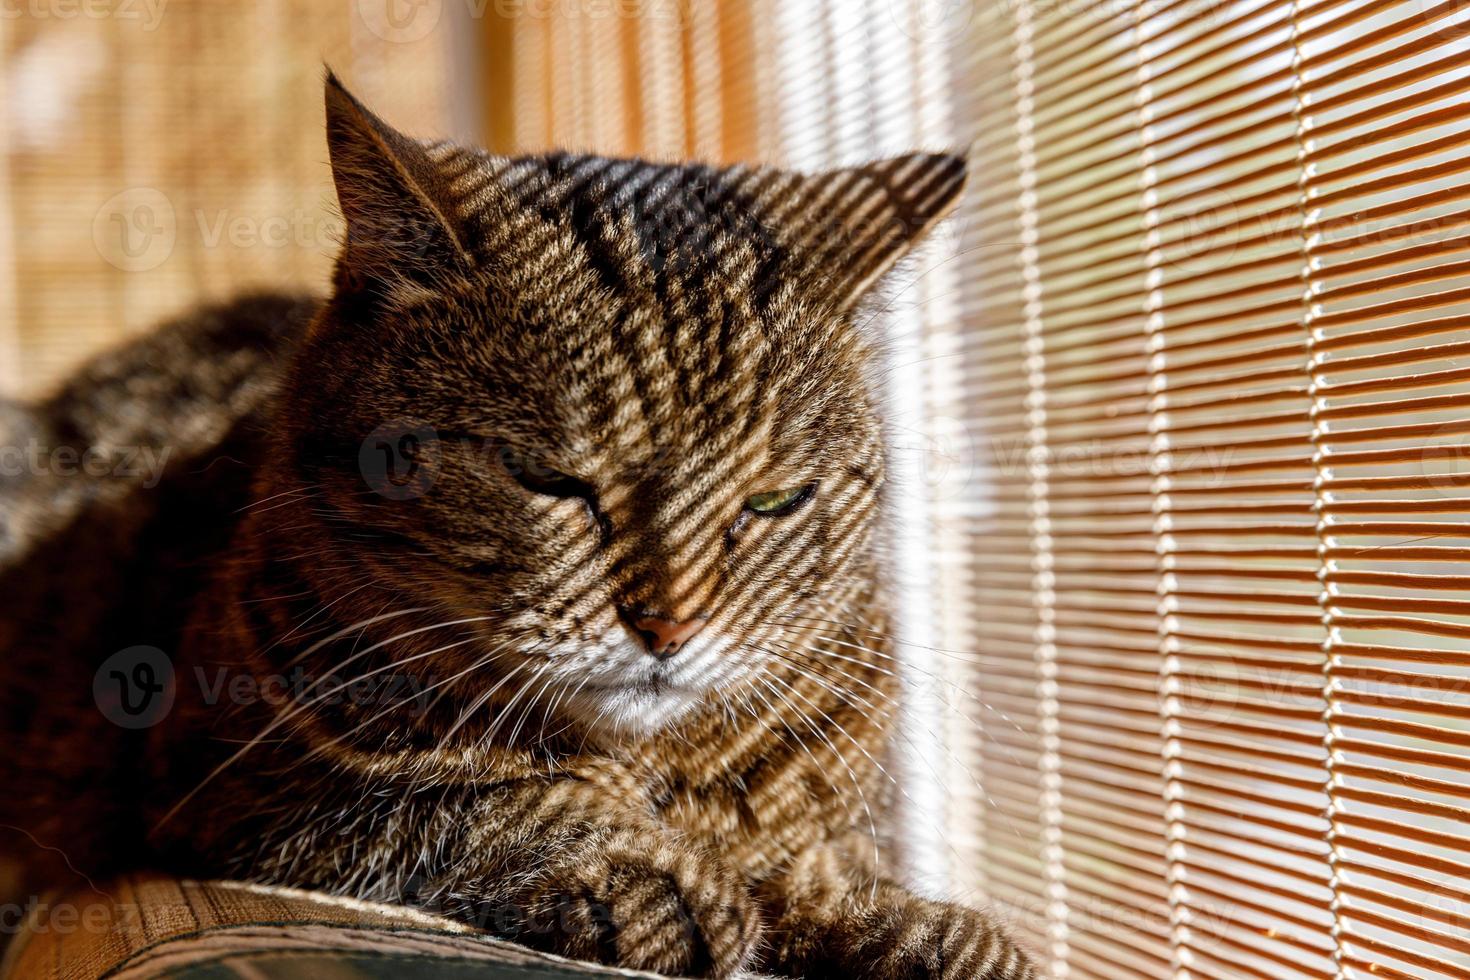 retrato divertido arrogante gato atigrado doméstico de pelo corto relajándose cerca de las persianas de la ventana en casa en el interior. pequeño gatito encantador miembro de la familia jugando en casa. cuidado de mascotas, salud y concepto animal. foto